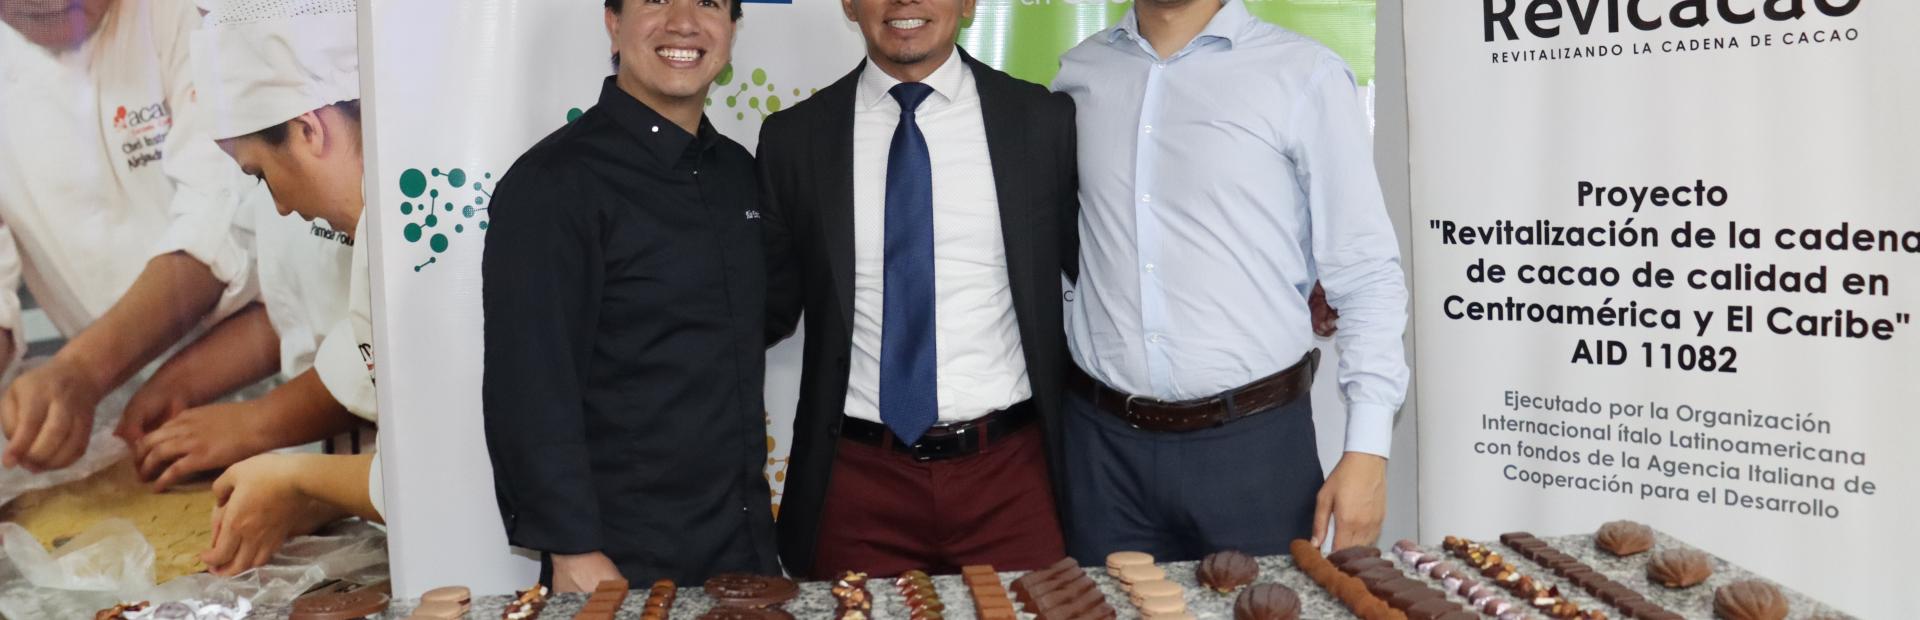 Chef Alan Espinoza de la Academia de Chocolate Barry Callebaut de México, Percy Ac de Rikolto y Giuseppe Blasetti de la Secretaría de Socioeconomía del IILA.